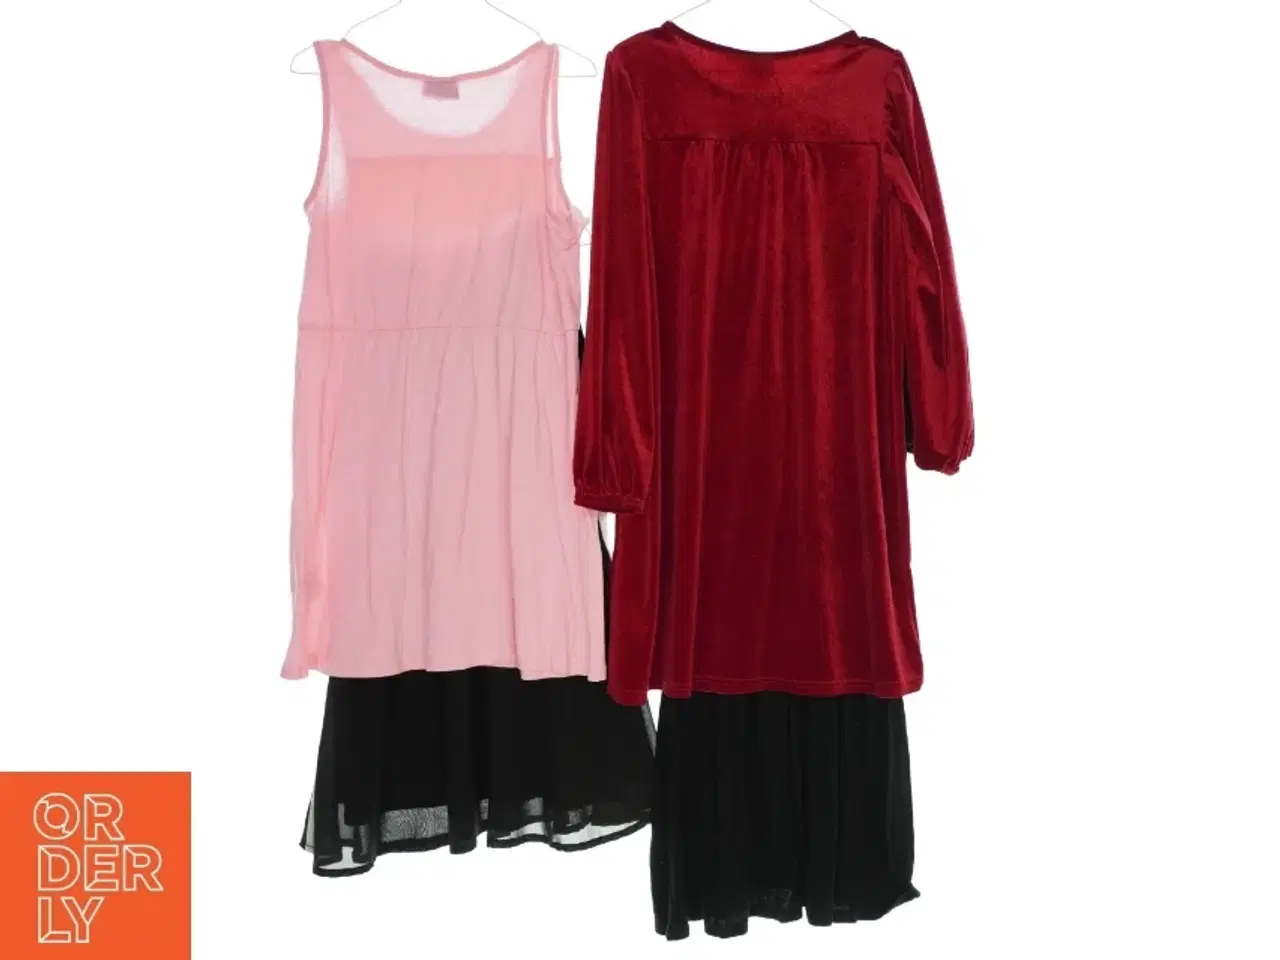 Billede 2 - 4 kjoler fra forskellige mærker